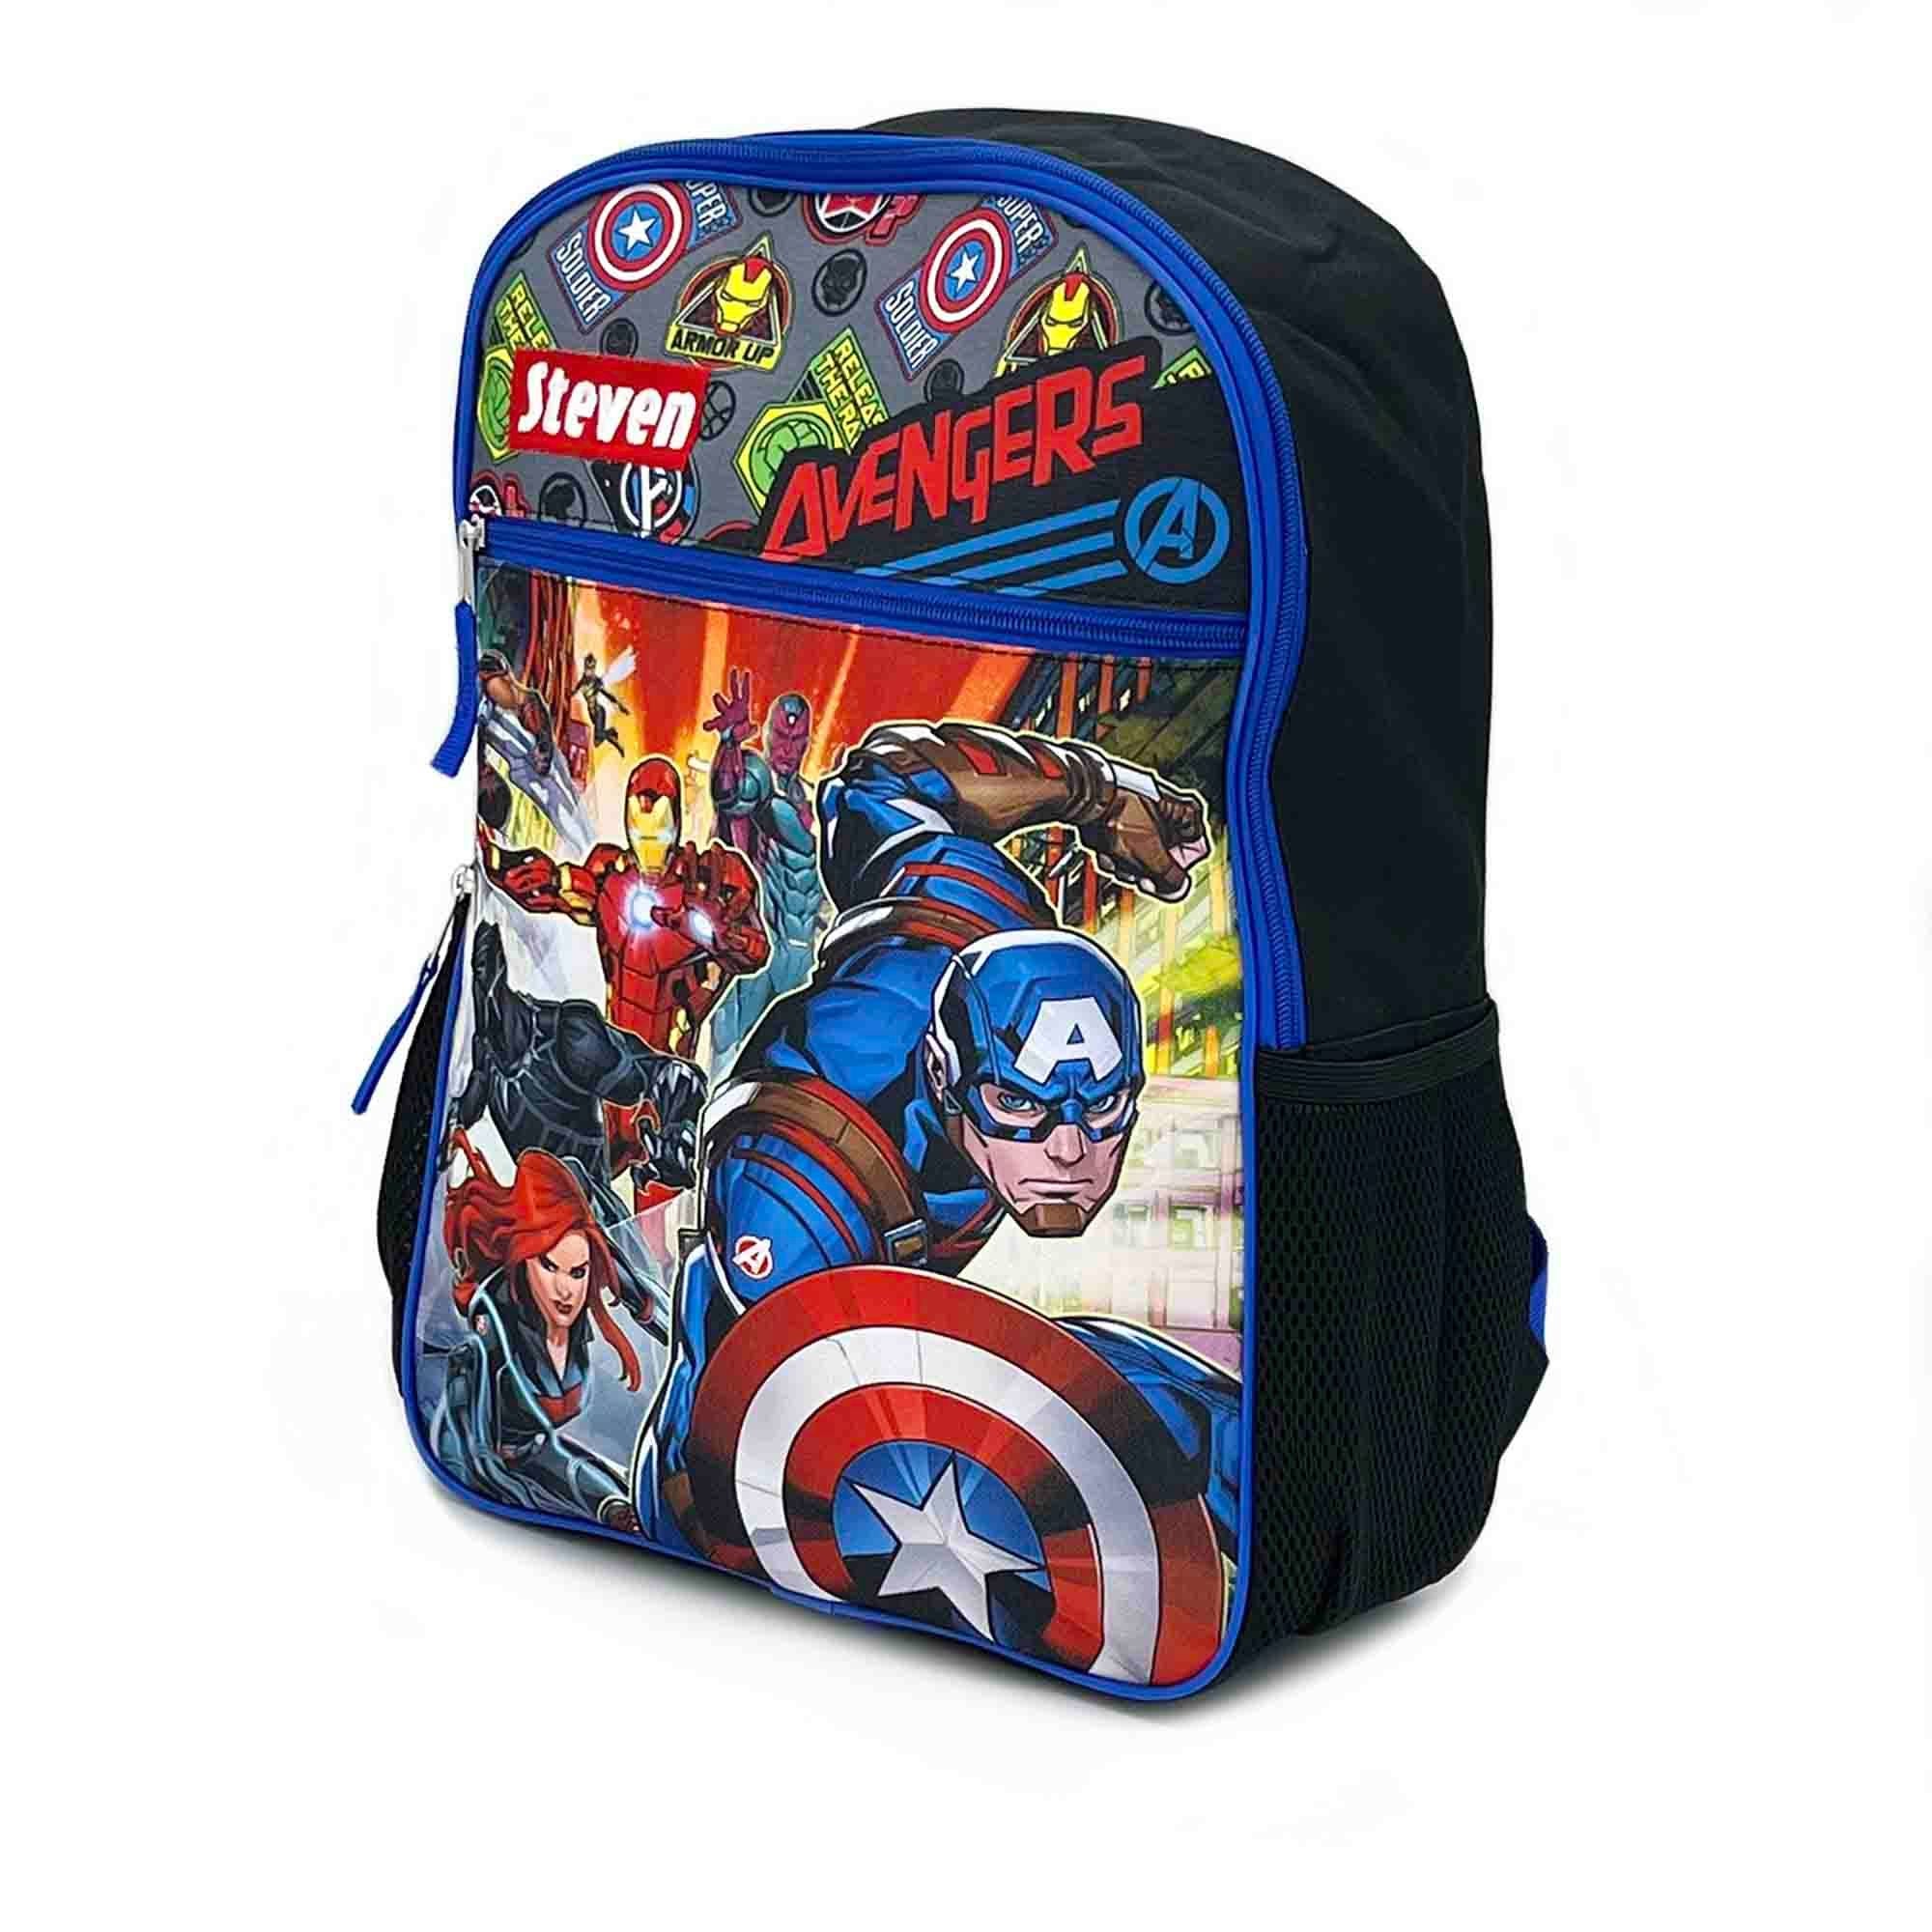 Avengers Backpack Clip